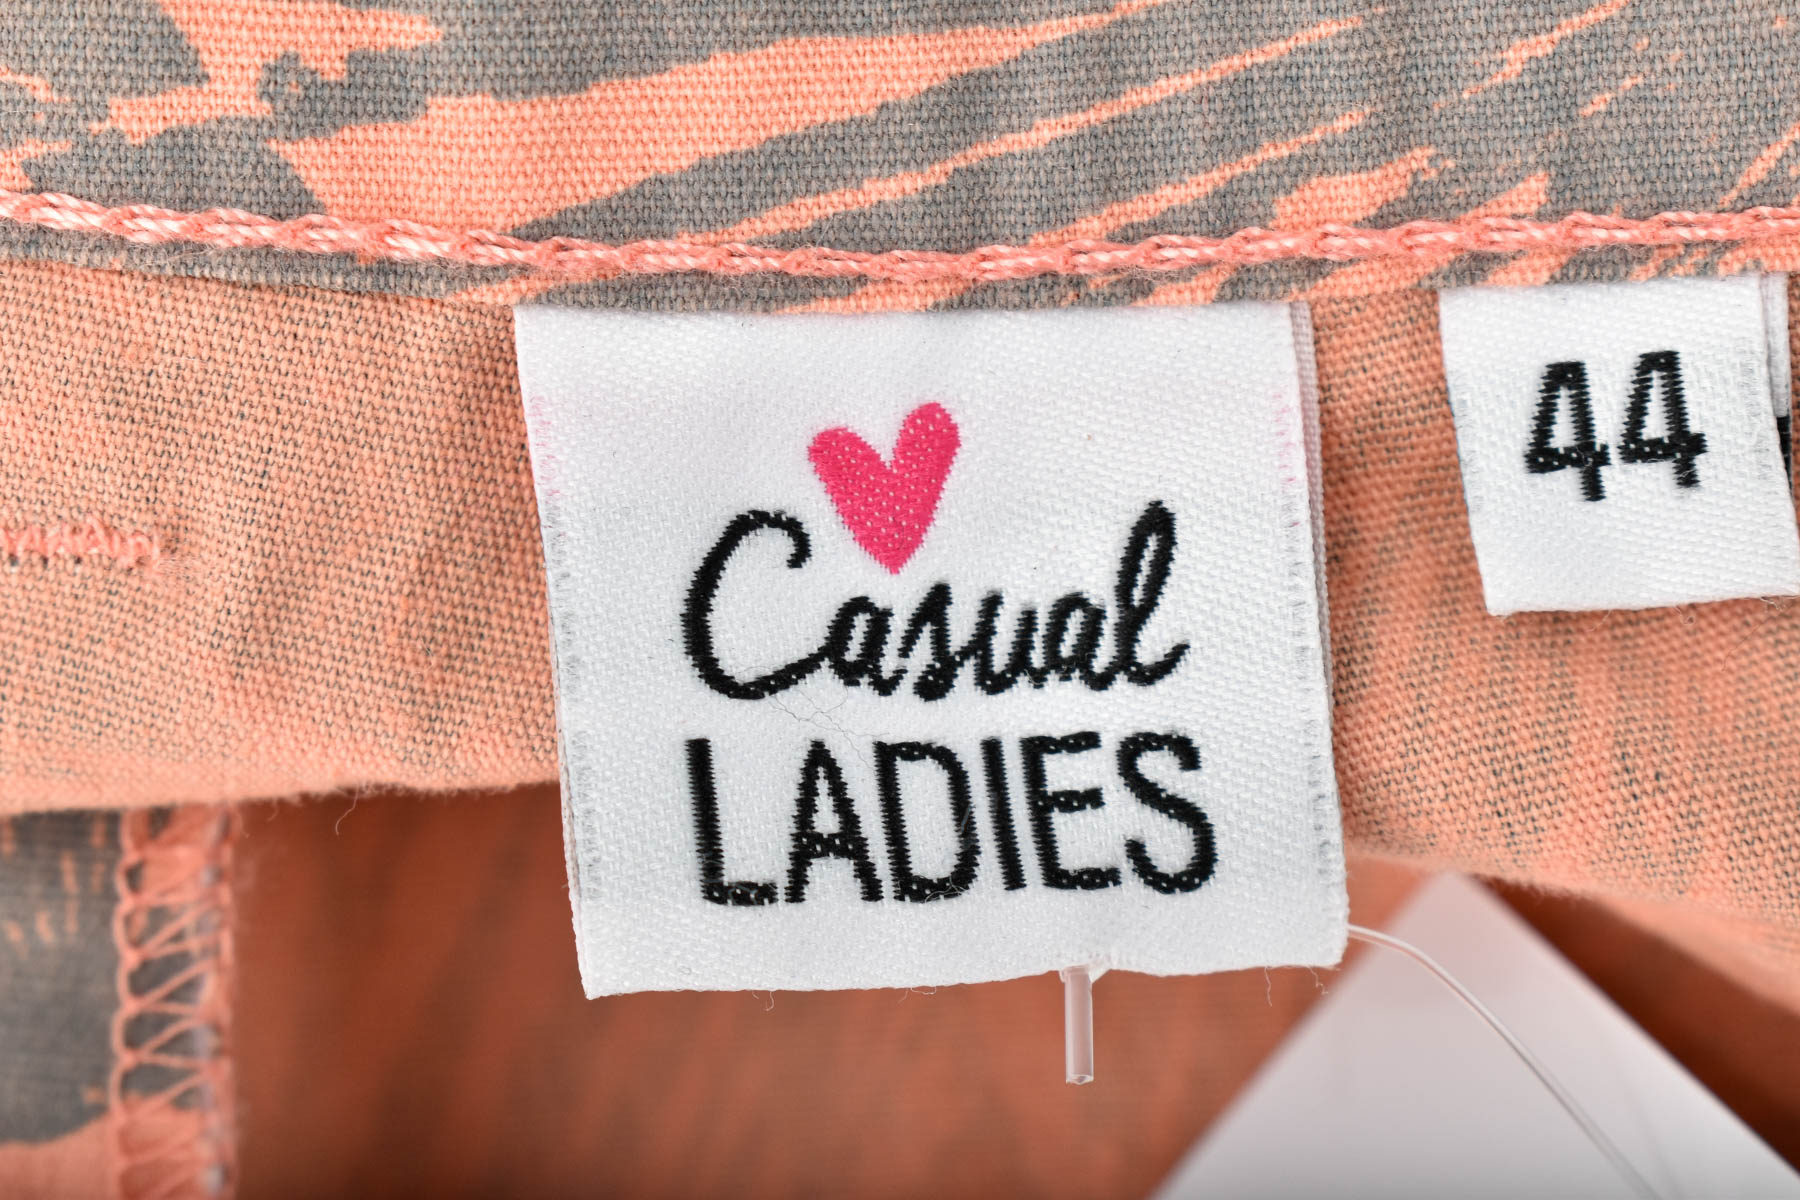 Female shorts - Casual LADIES - 2